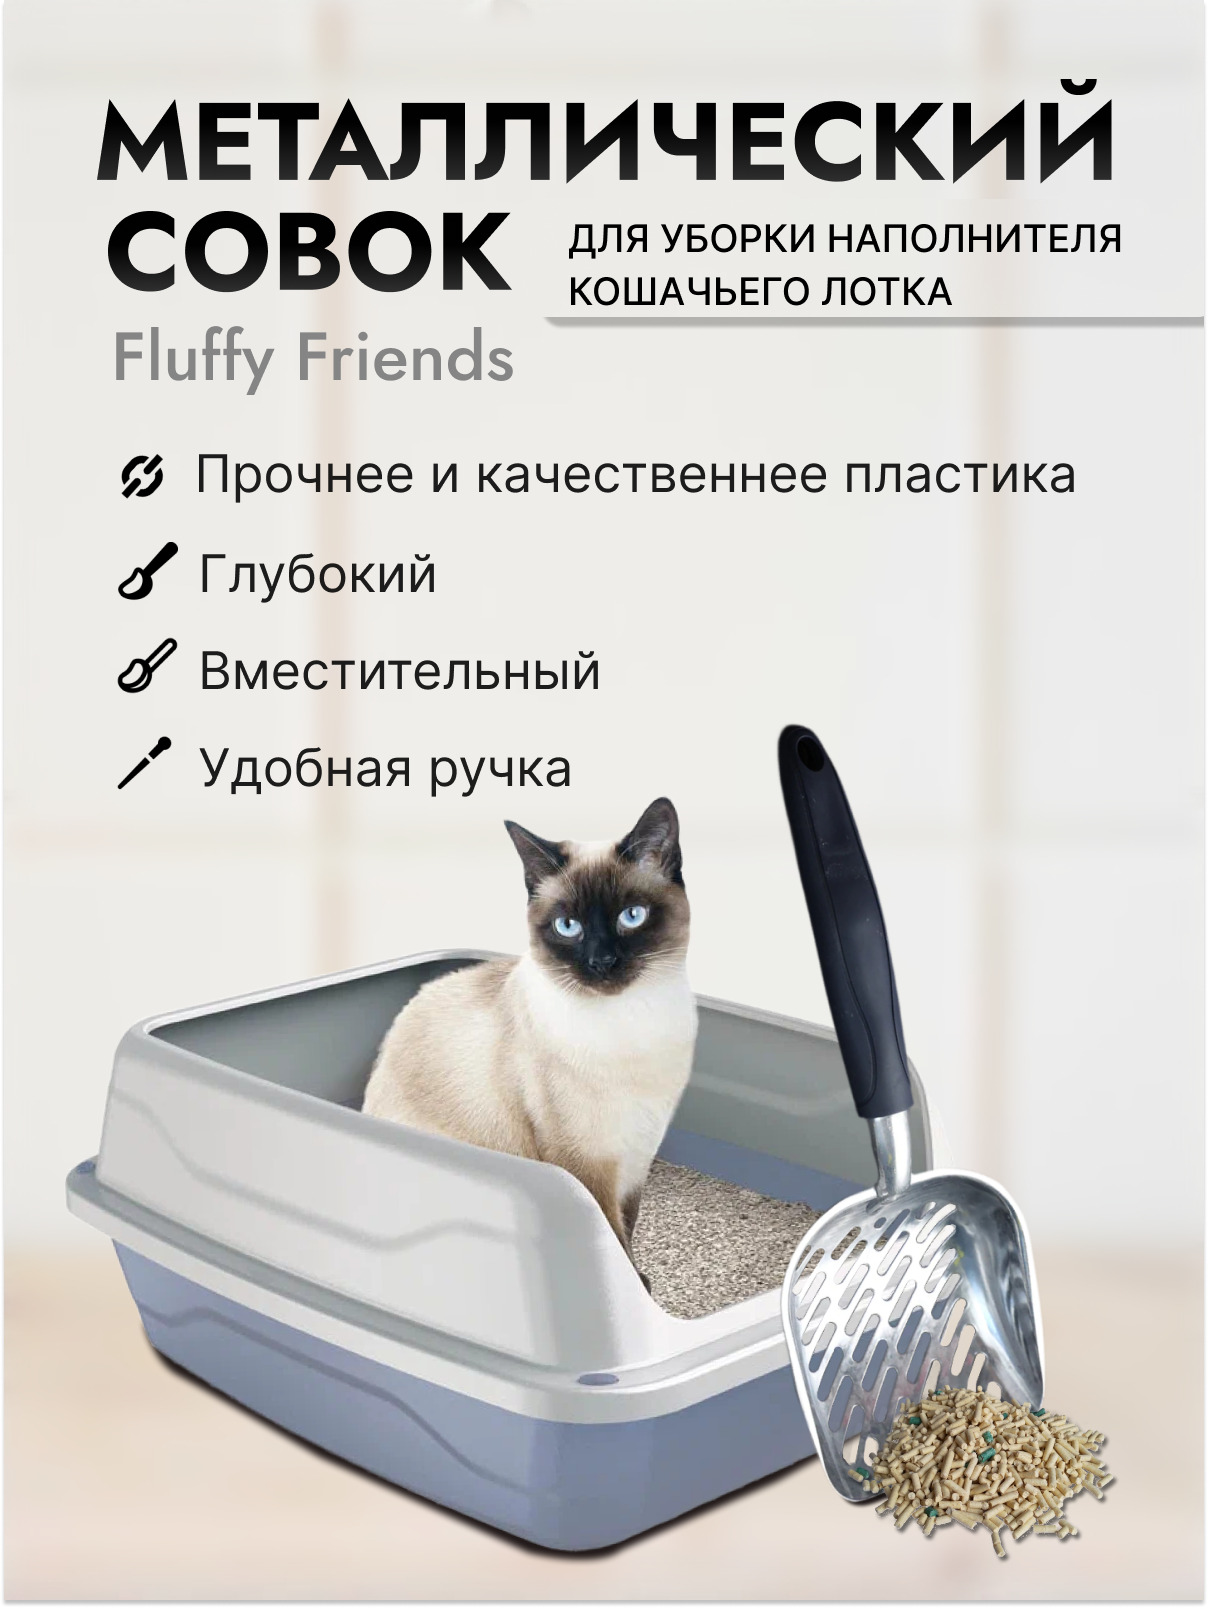 удобный металлический совок для уборки наполнителя кошачьего лотка туалета  совочек для кота и кошки  лопатка для кошачьего туалета специальная сетка для отделения наполнителя 